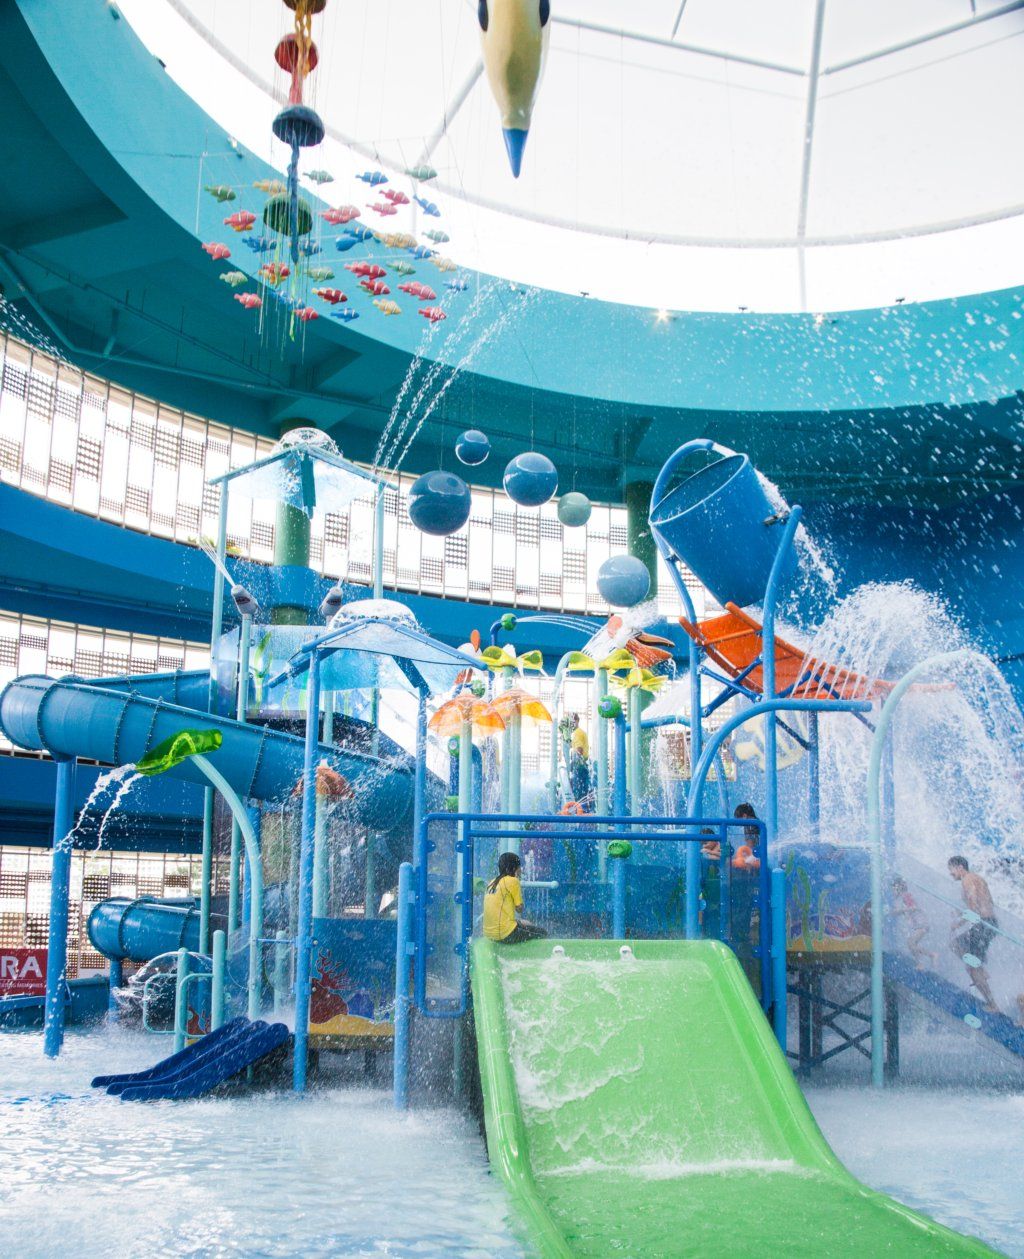 Splash@Kidz Amaze Indoor Water Playground slides